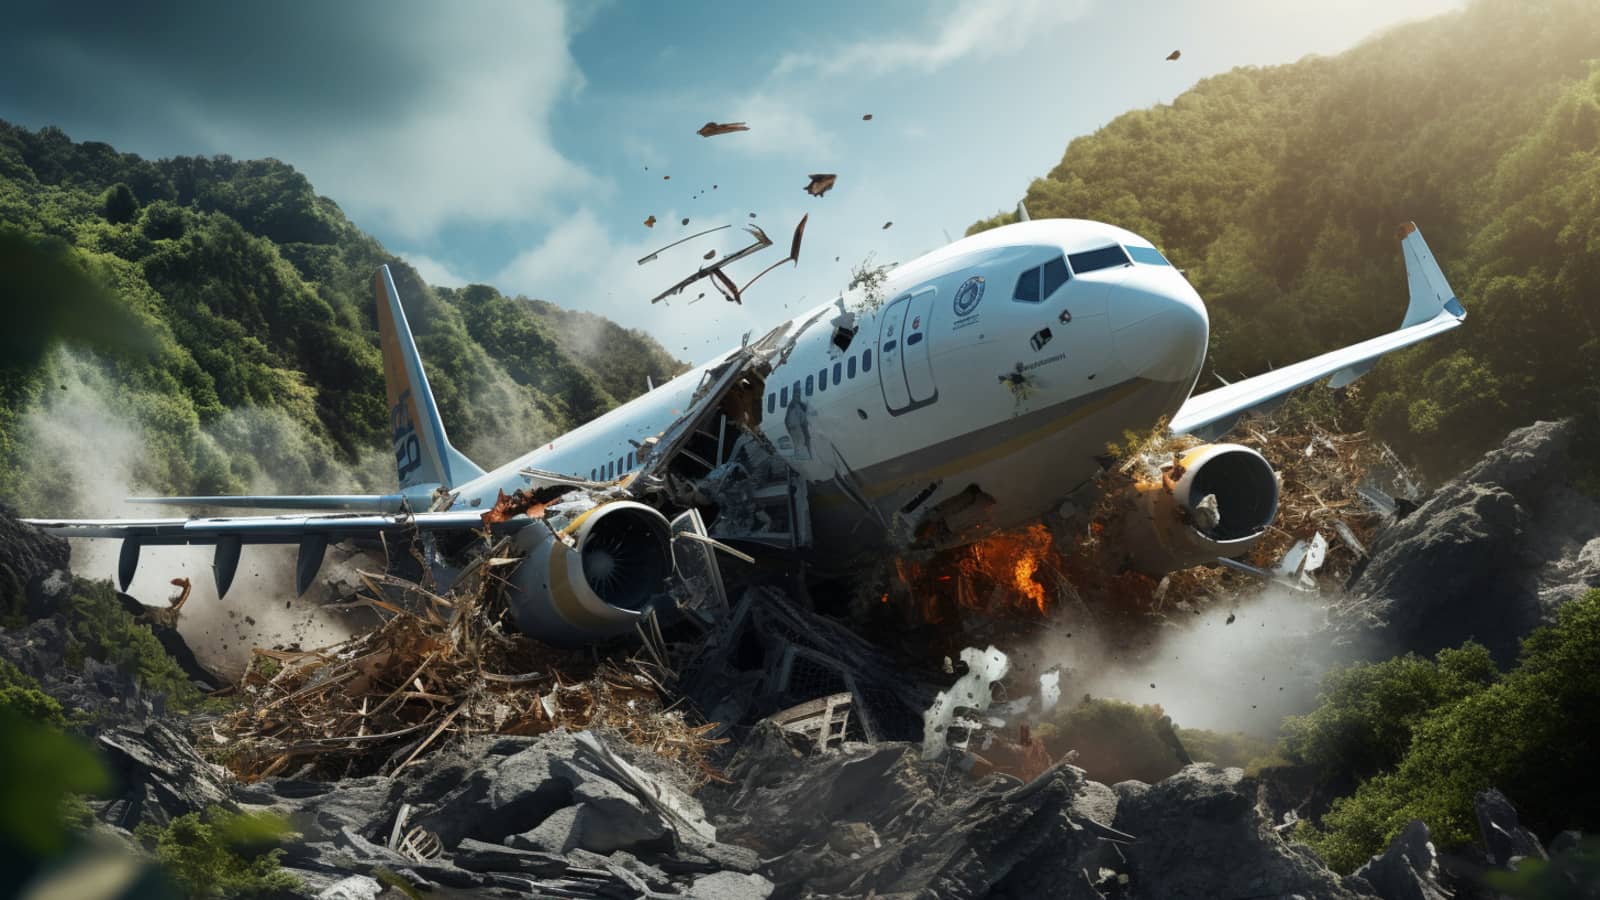 zniszczony samolot po wypadku lotniczym 